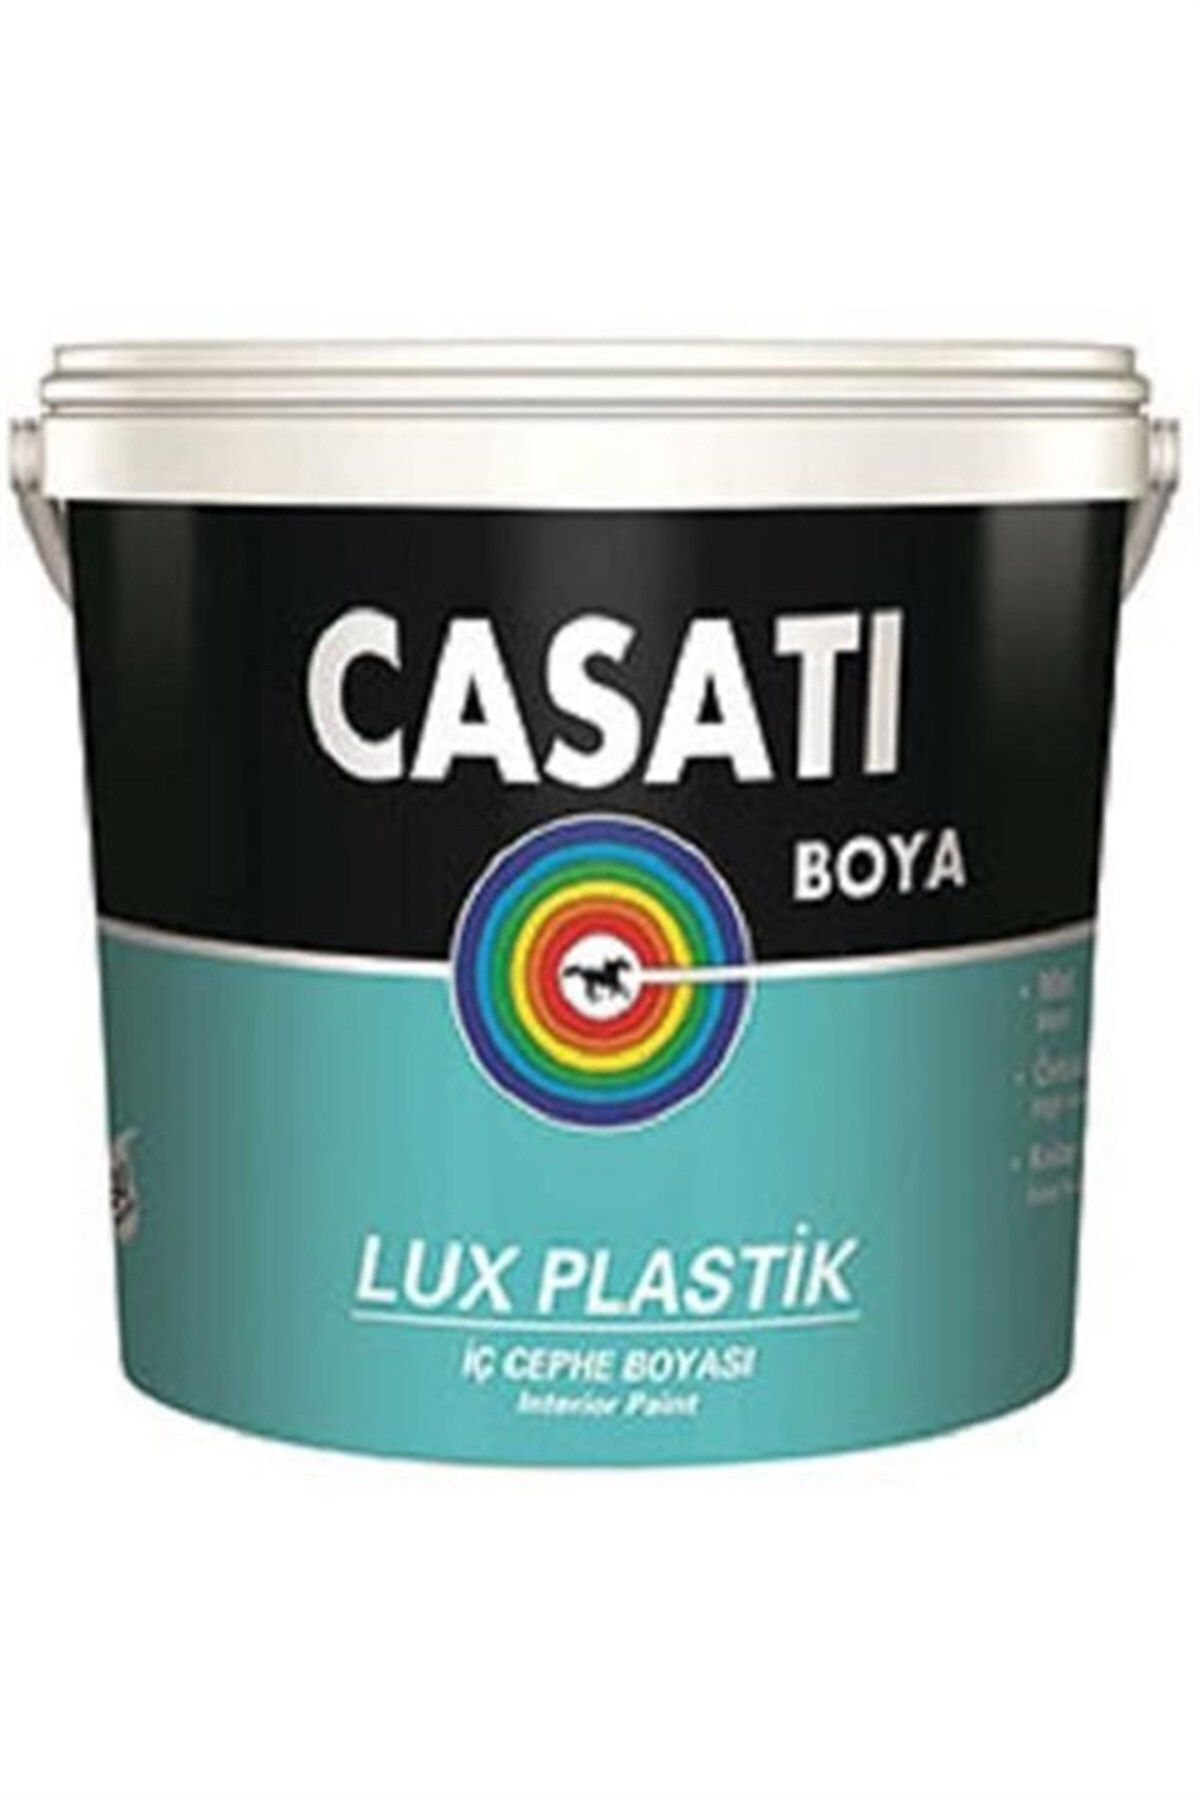 Casati Dyo Casati Lüx Plastik Iç Cephe Boyası 3.5 Kg Tüm Renkler Mevcuttur